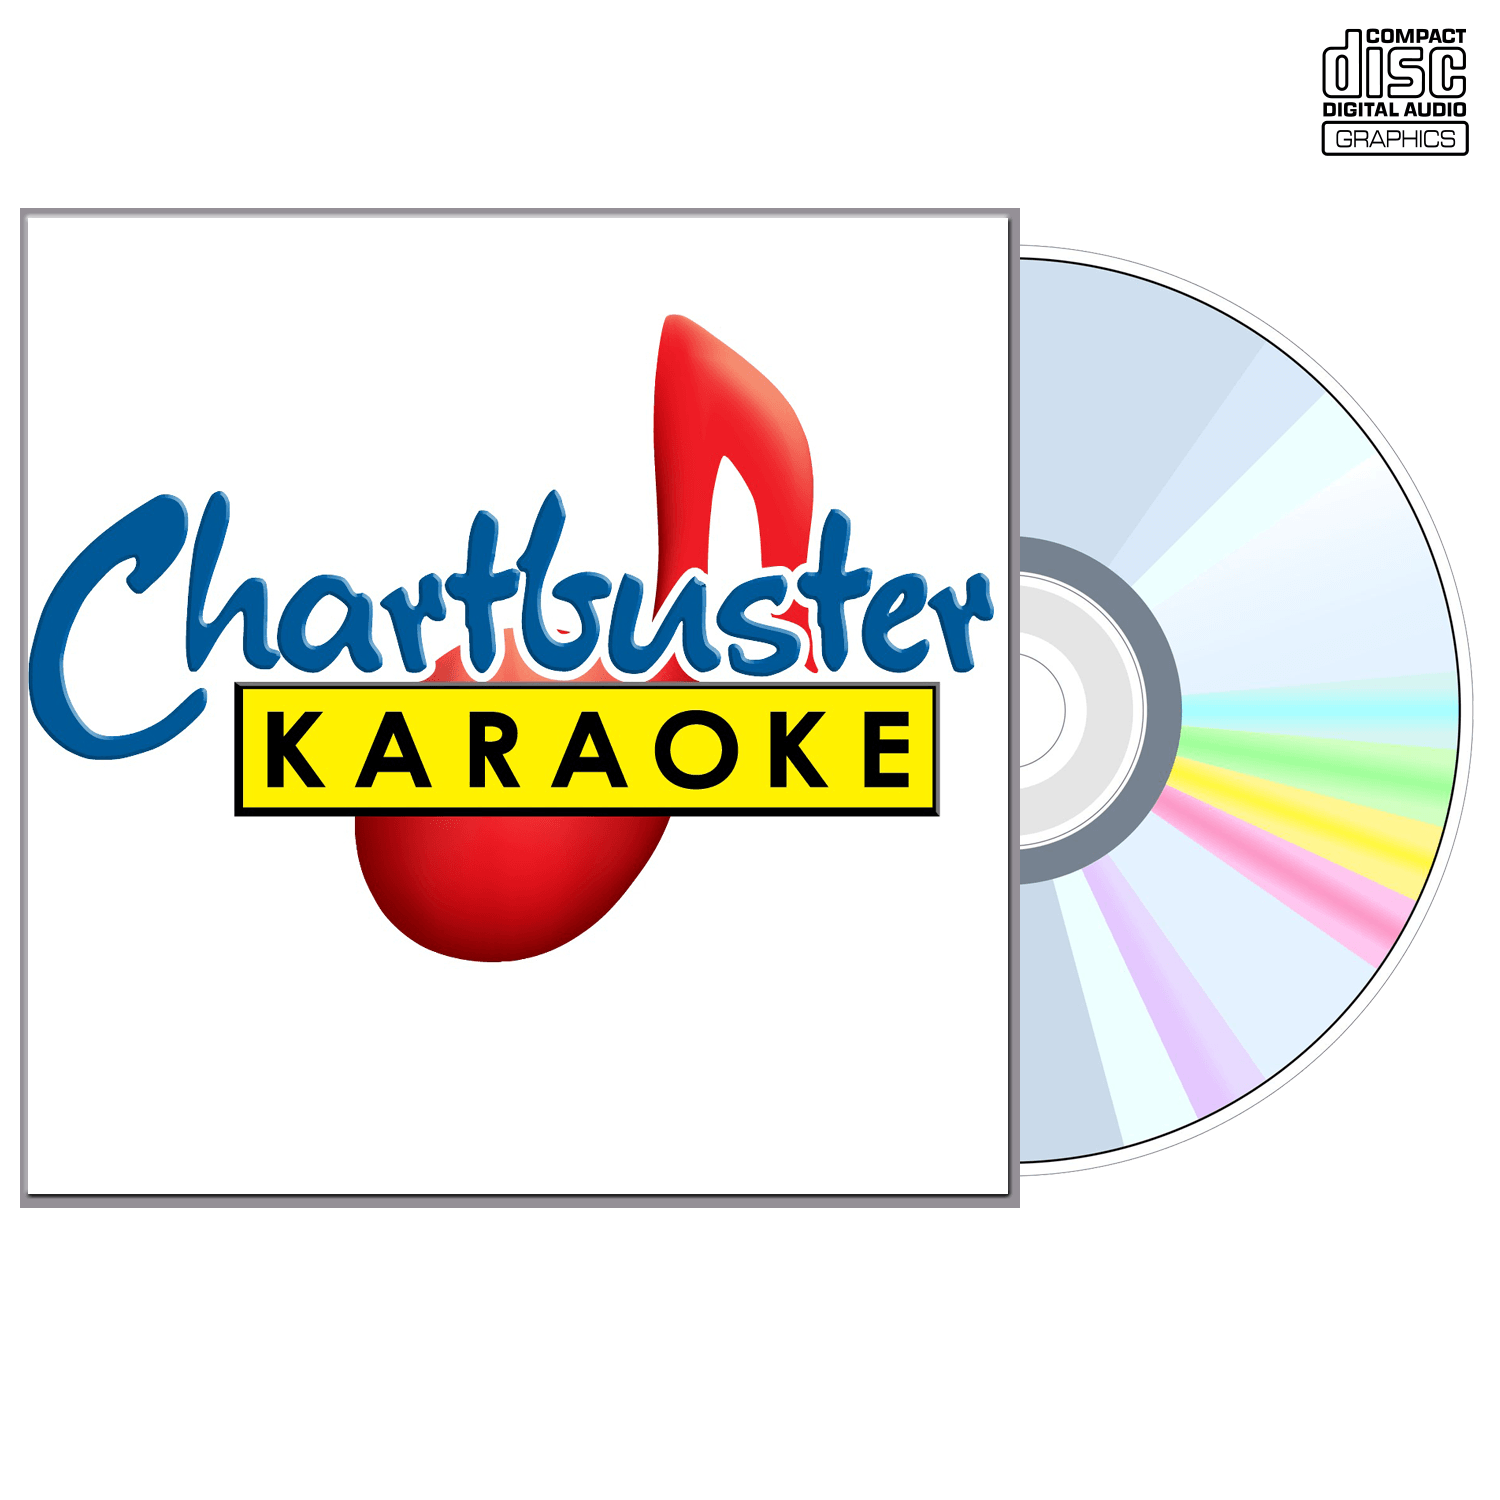 Tanya Tucker Vol 1 - CD+G - Chartbuster Karaoke - Karaoke Home Entertainment